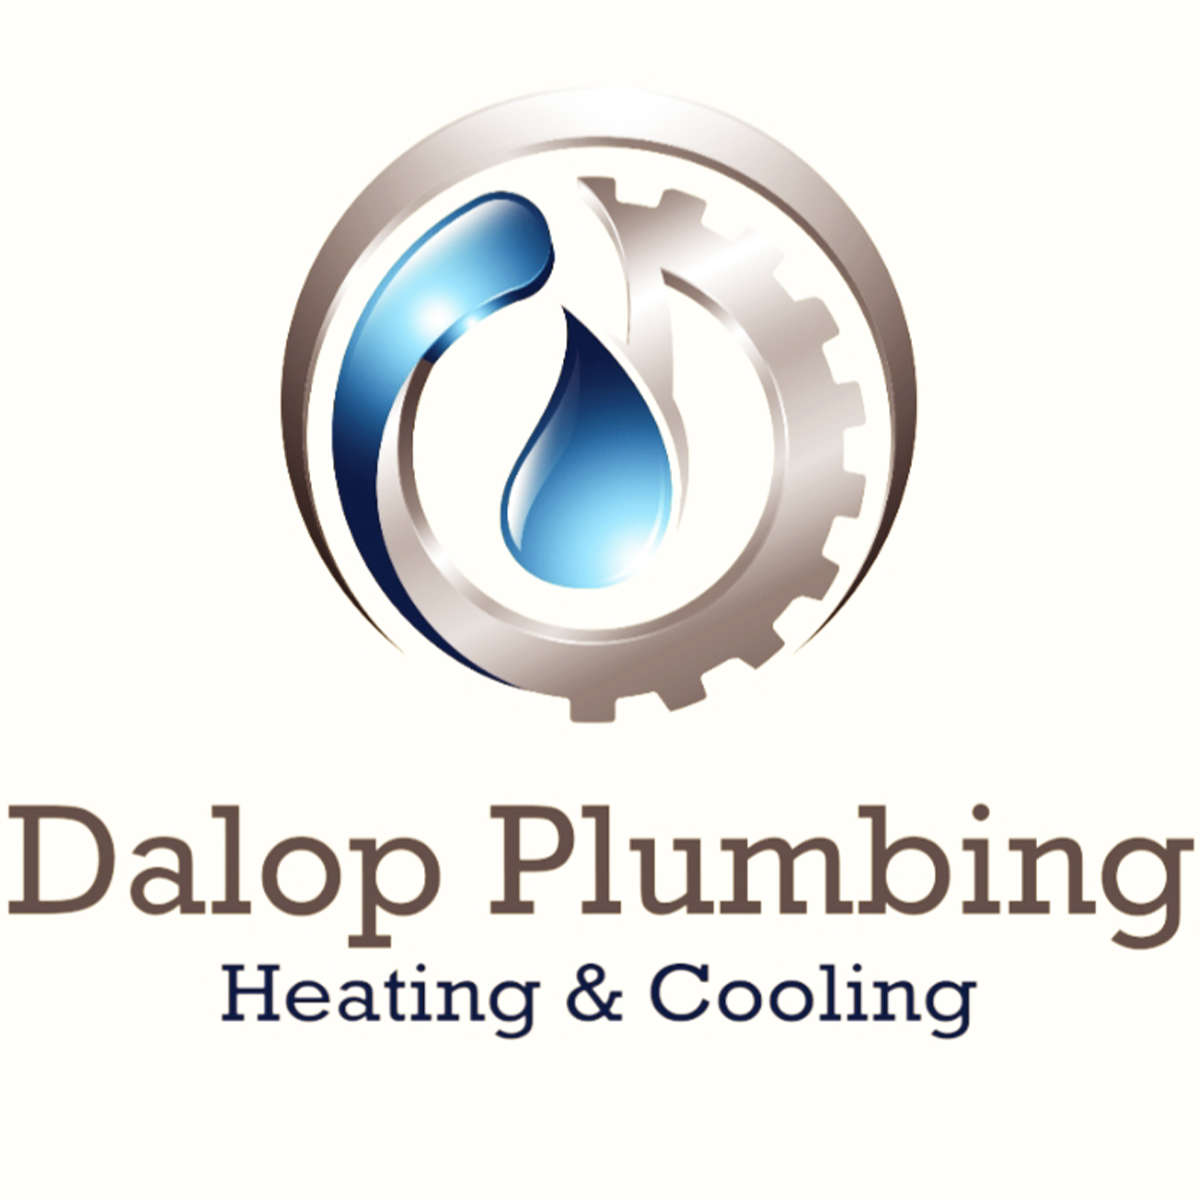 Dalop Plumbing Heating & Cooling Logo